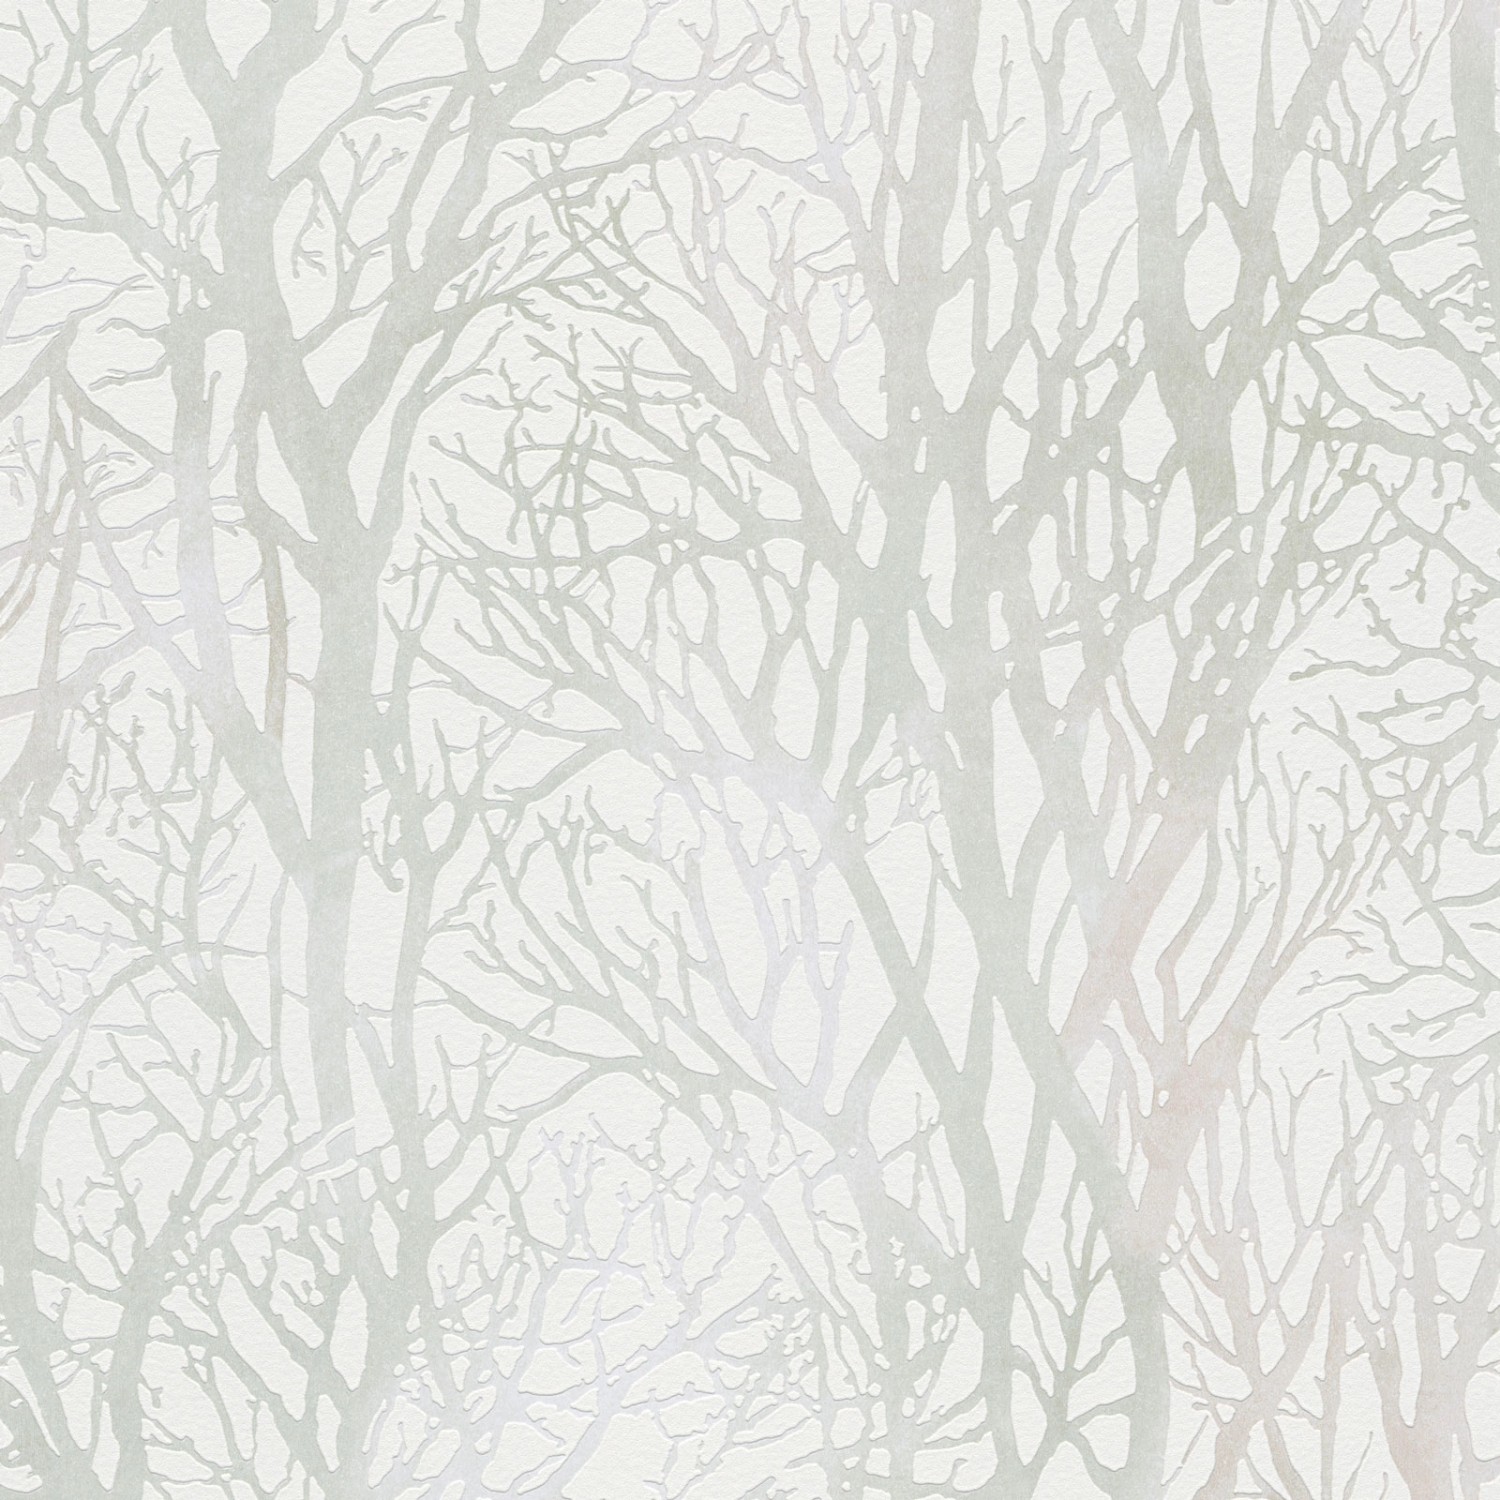 Bricoflor Baum Tapete Weiß Grau Vlies Baumtapete Ideal für Wohnzimmer und Esszimmer Helle Vliestapete mit Wald Design in